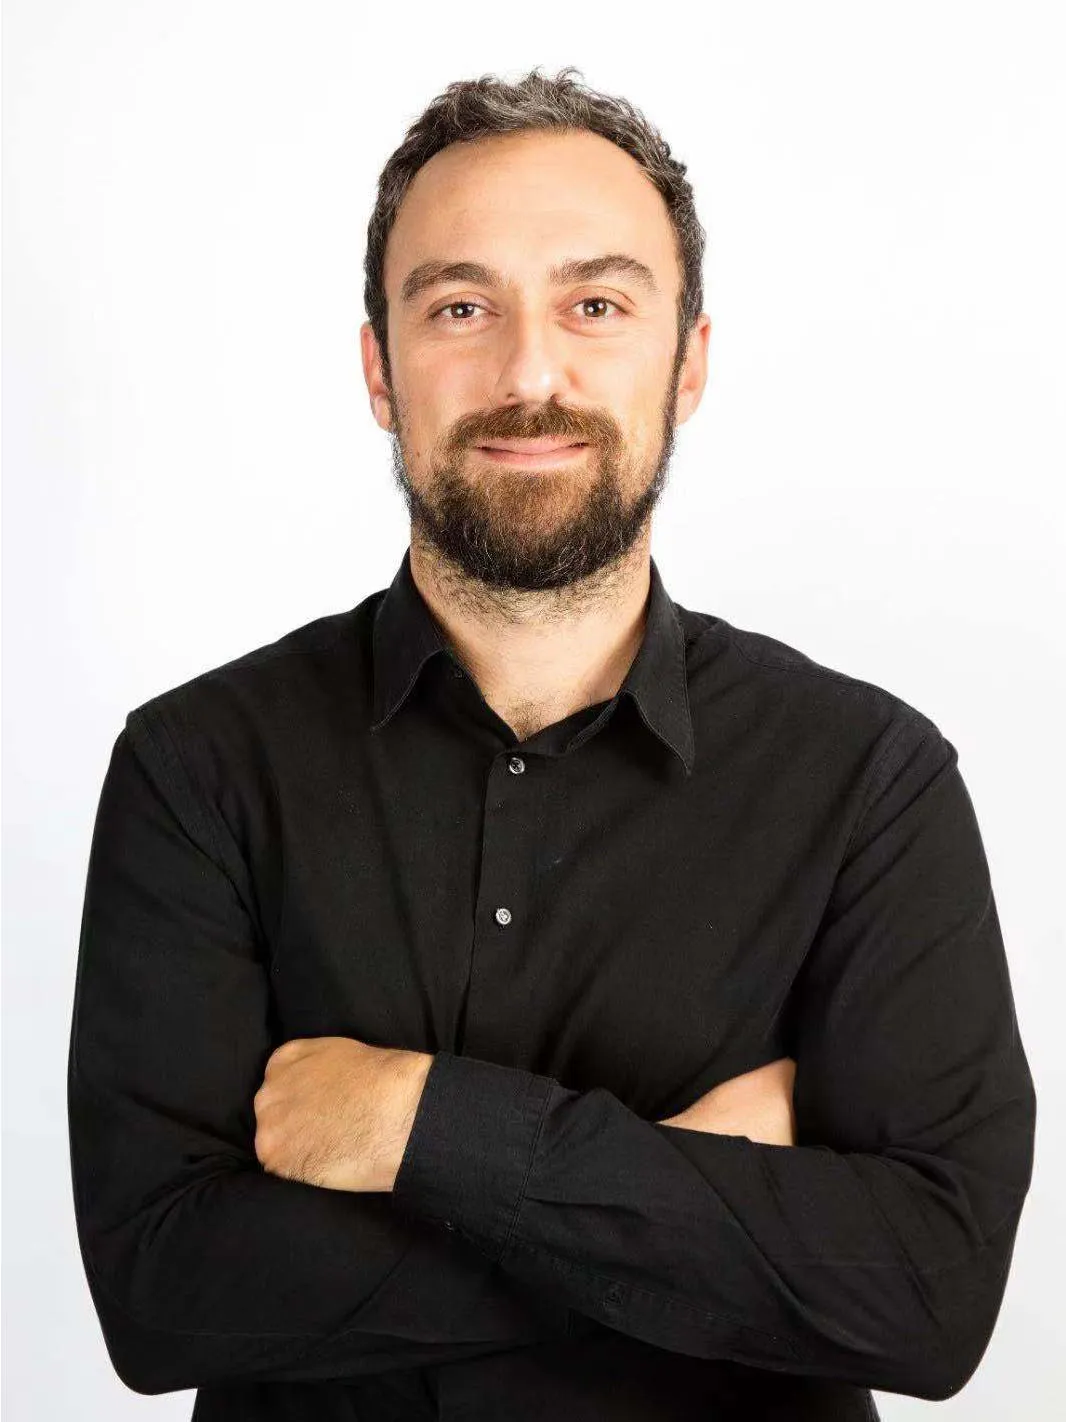 Paolo Rossi Profile Picture